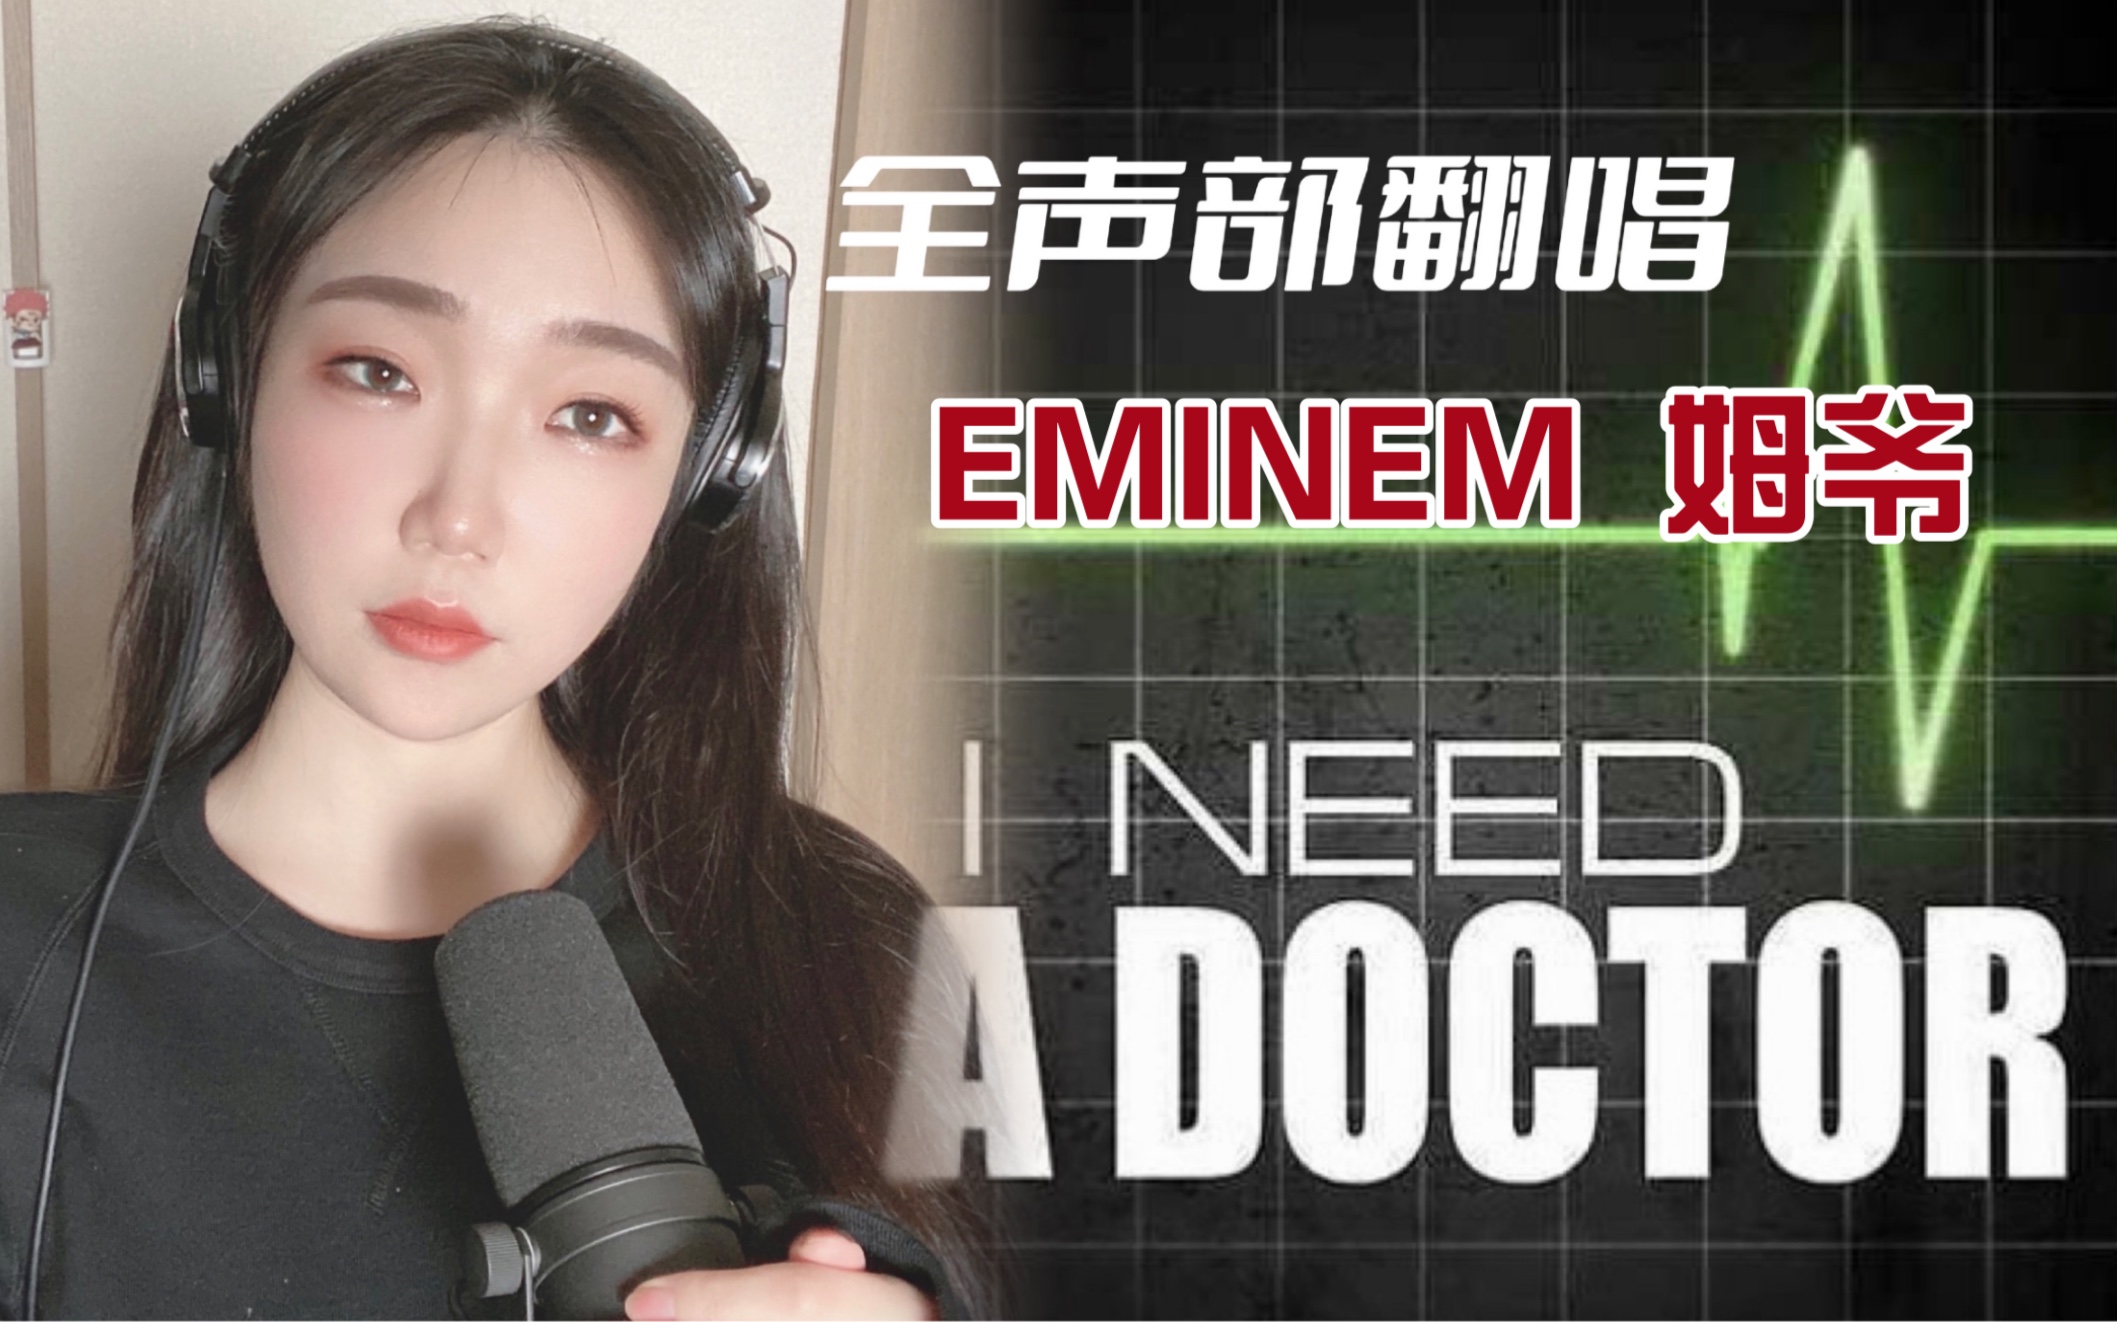 救救我, 我需要一个医生|《I need a doctor》全声部翻唱| Eminem